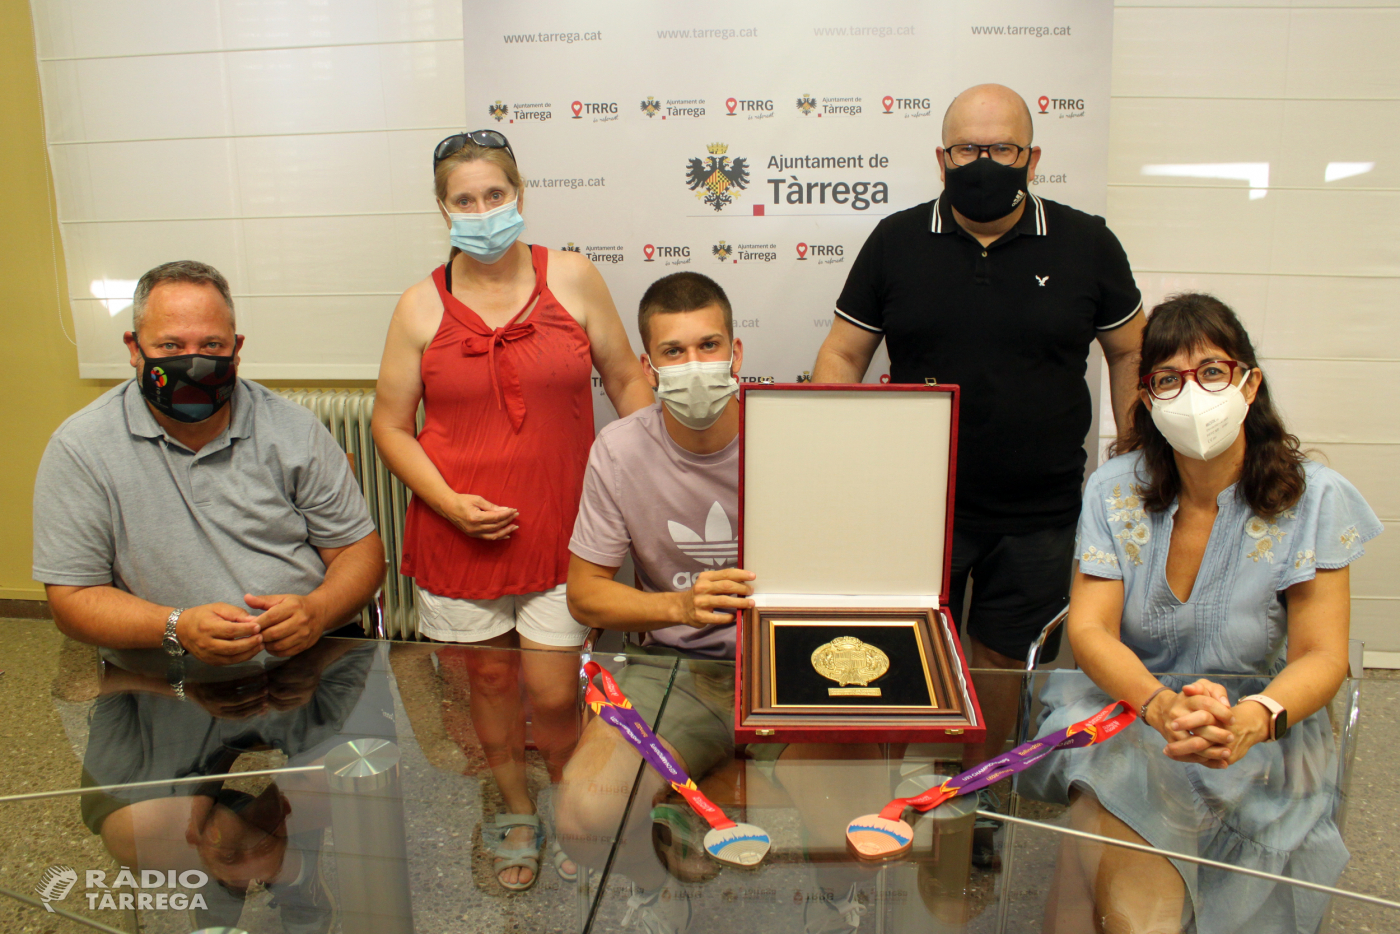 L’Ajuntament de Tàrrega rep l’atleta Arnau Monné després de guanyar dues medalles als campionats europeus sub-23